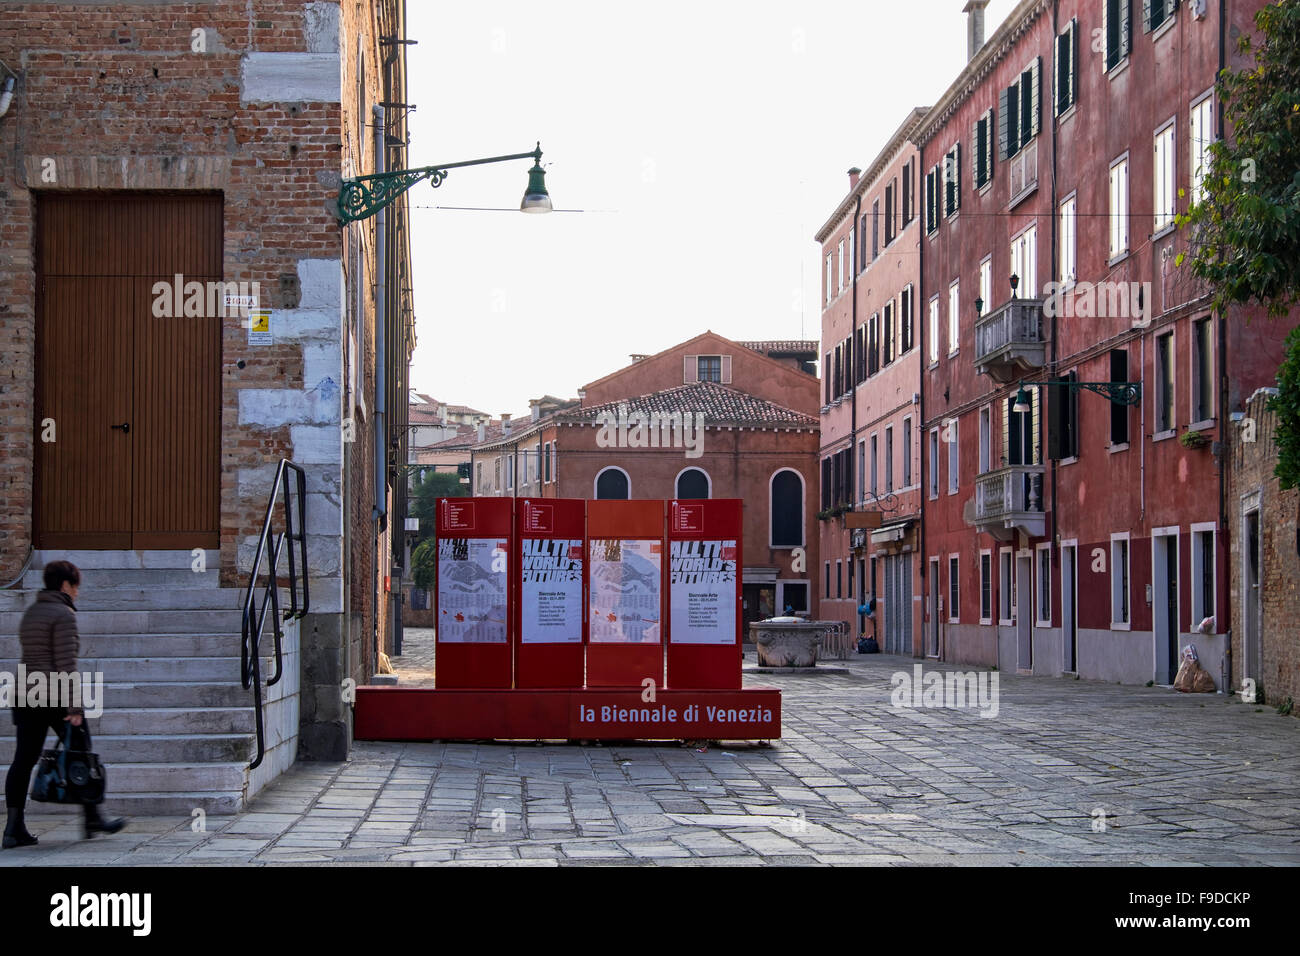 Venezia, Castello. 2015 Biennale di Venezia segno in ingresso alla sezione di Arsenale della Biennale Internazionale mostra d'arte.La Biennale di Venezia Foto Stock